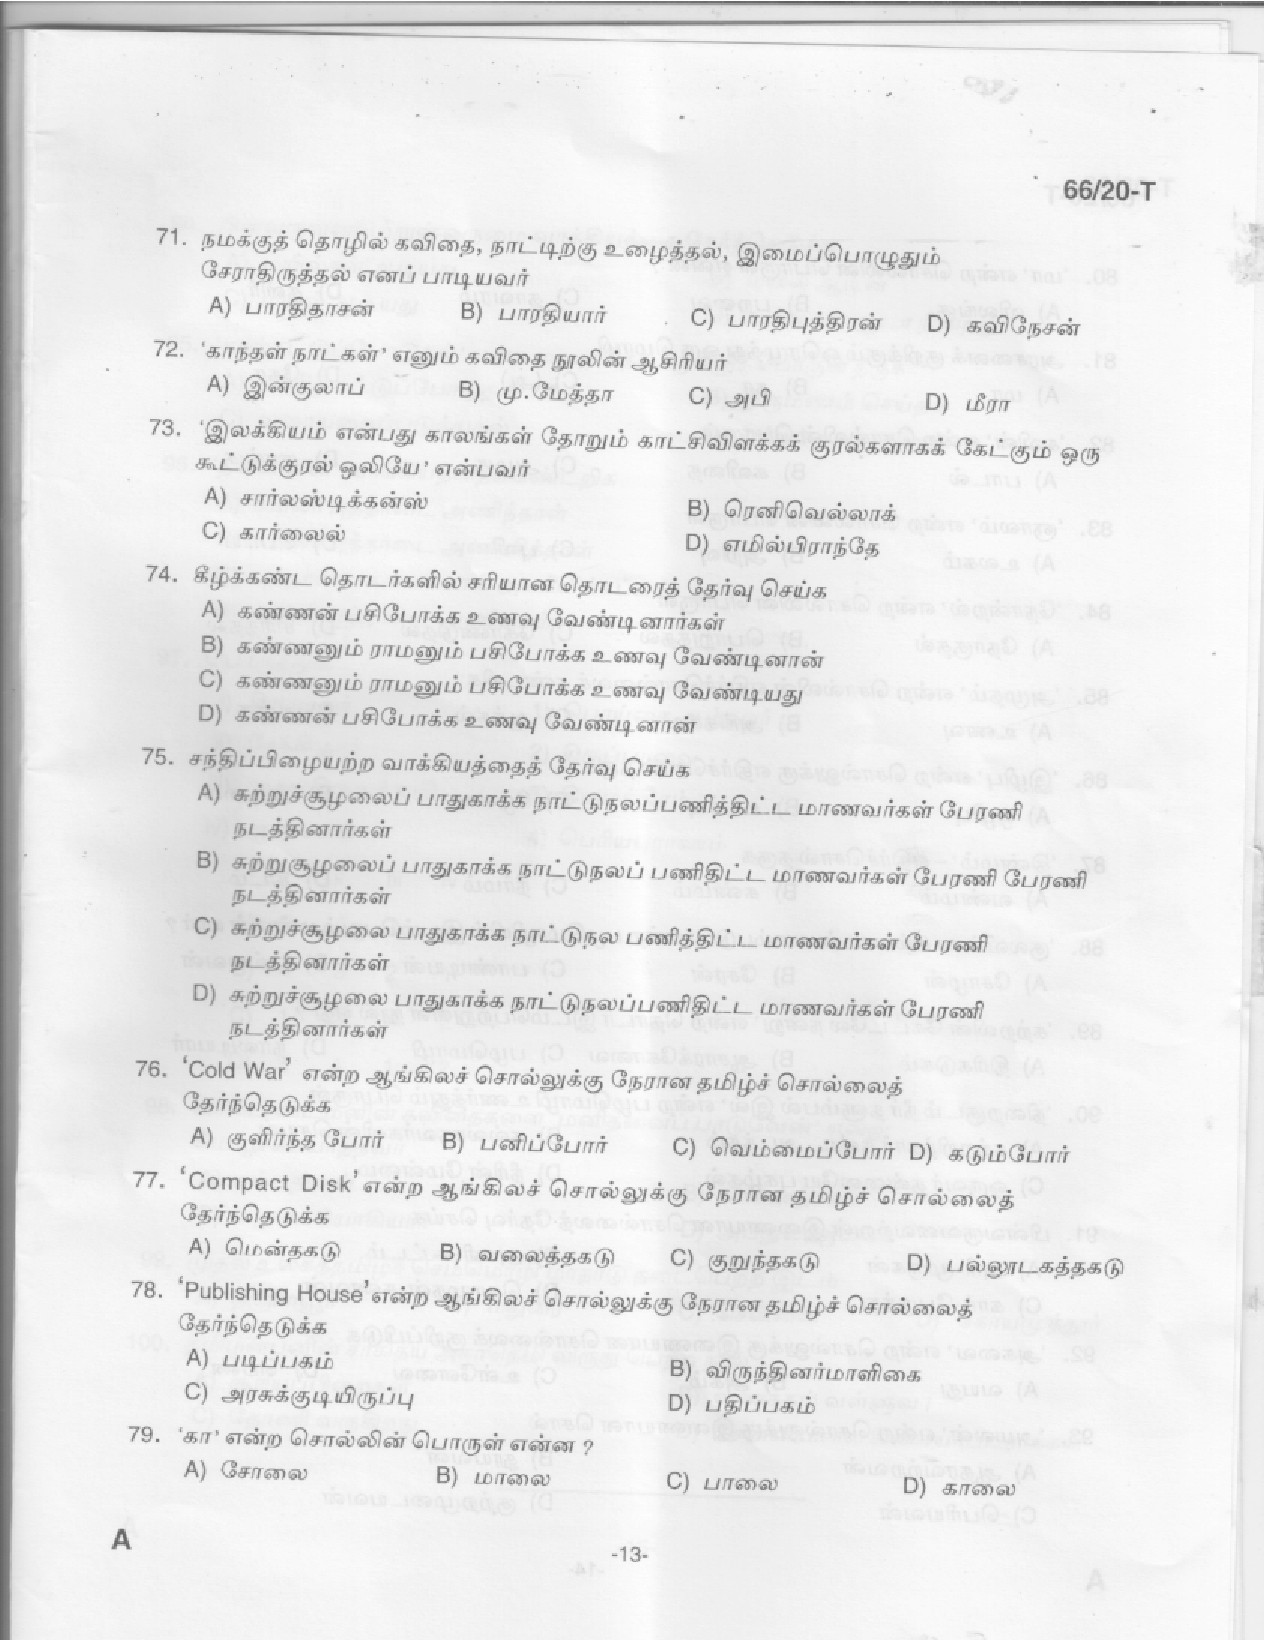 KAS Officer Paper II Tamil Exam 2020 Code 662020 T 12